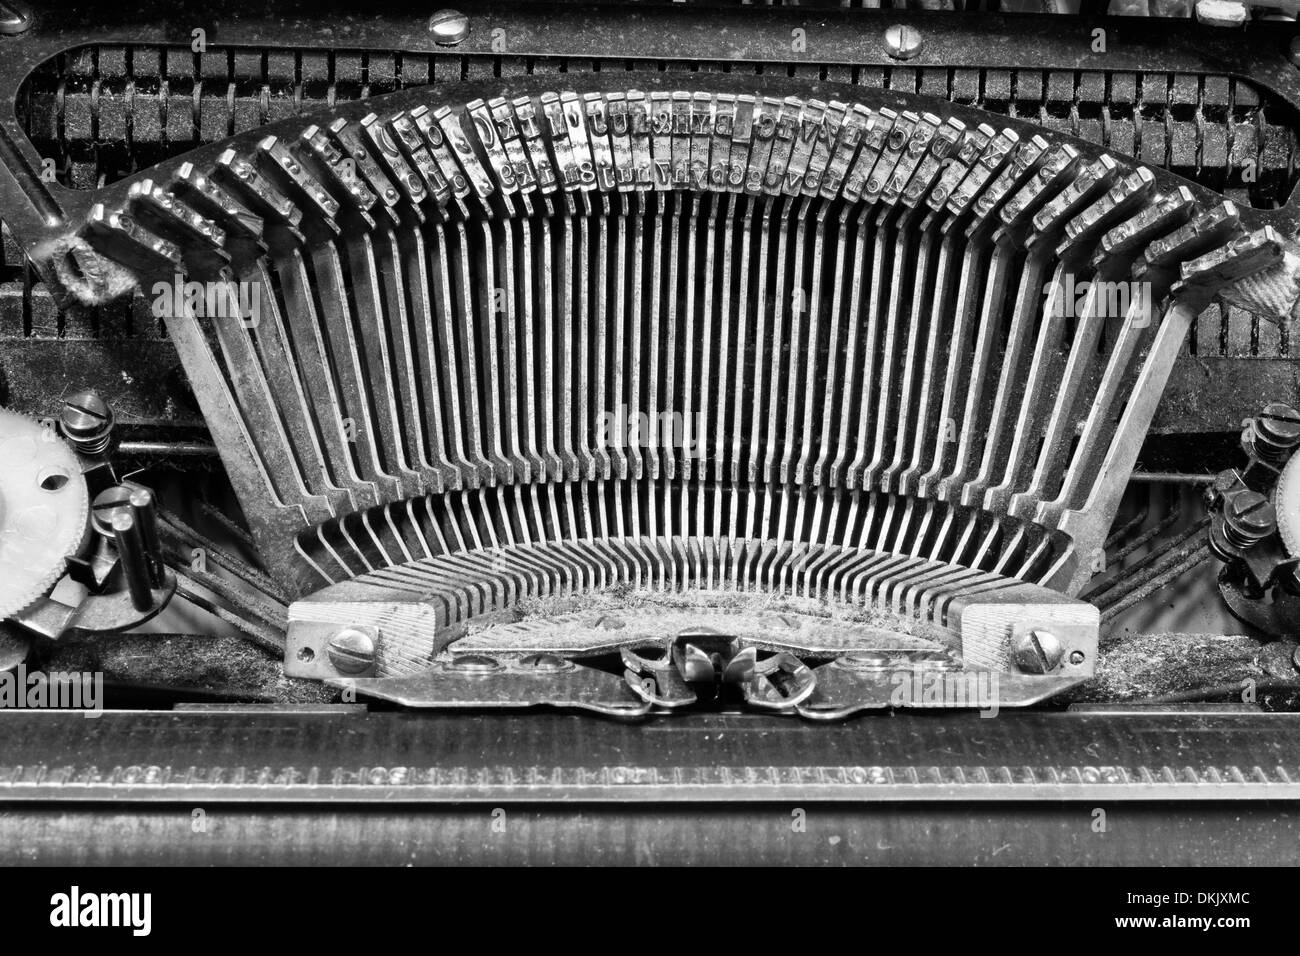 Antike Schreibmaschine - eine antike Schreibmaschine zeigt traditionelle Typebars Stockfoto